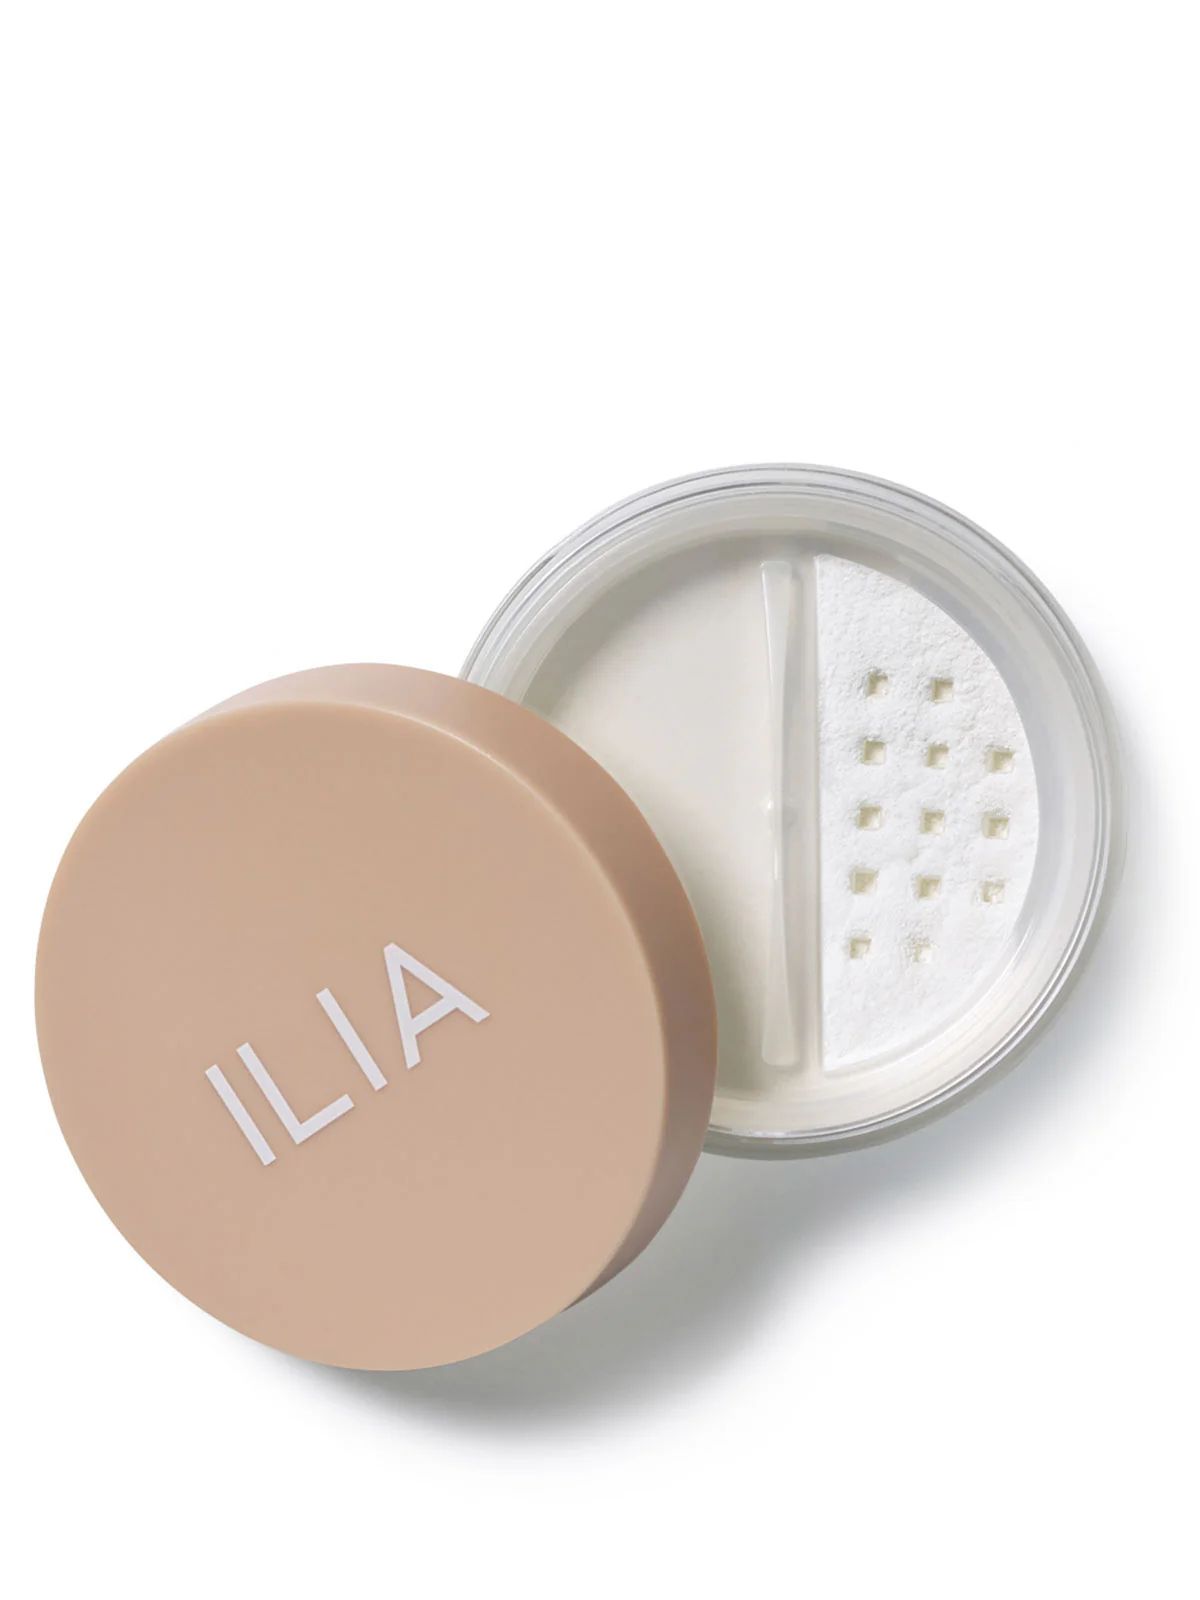 Soft Focus Finishing Powder - Radiant Finishing Powder | ILIA | ILIA Beauty